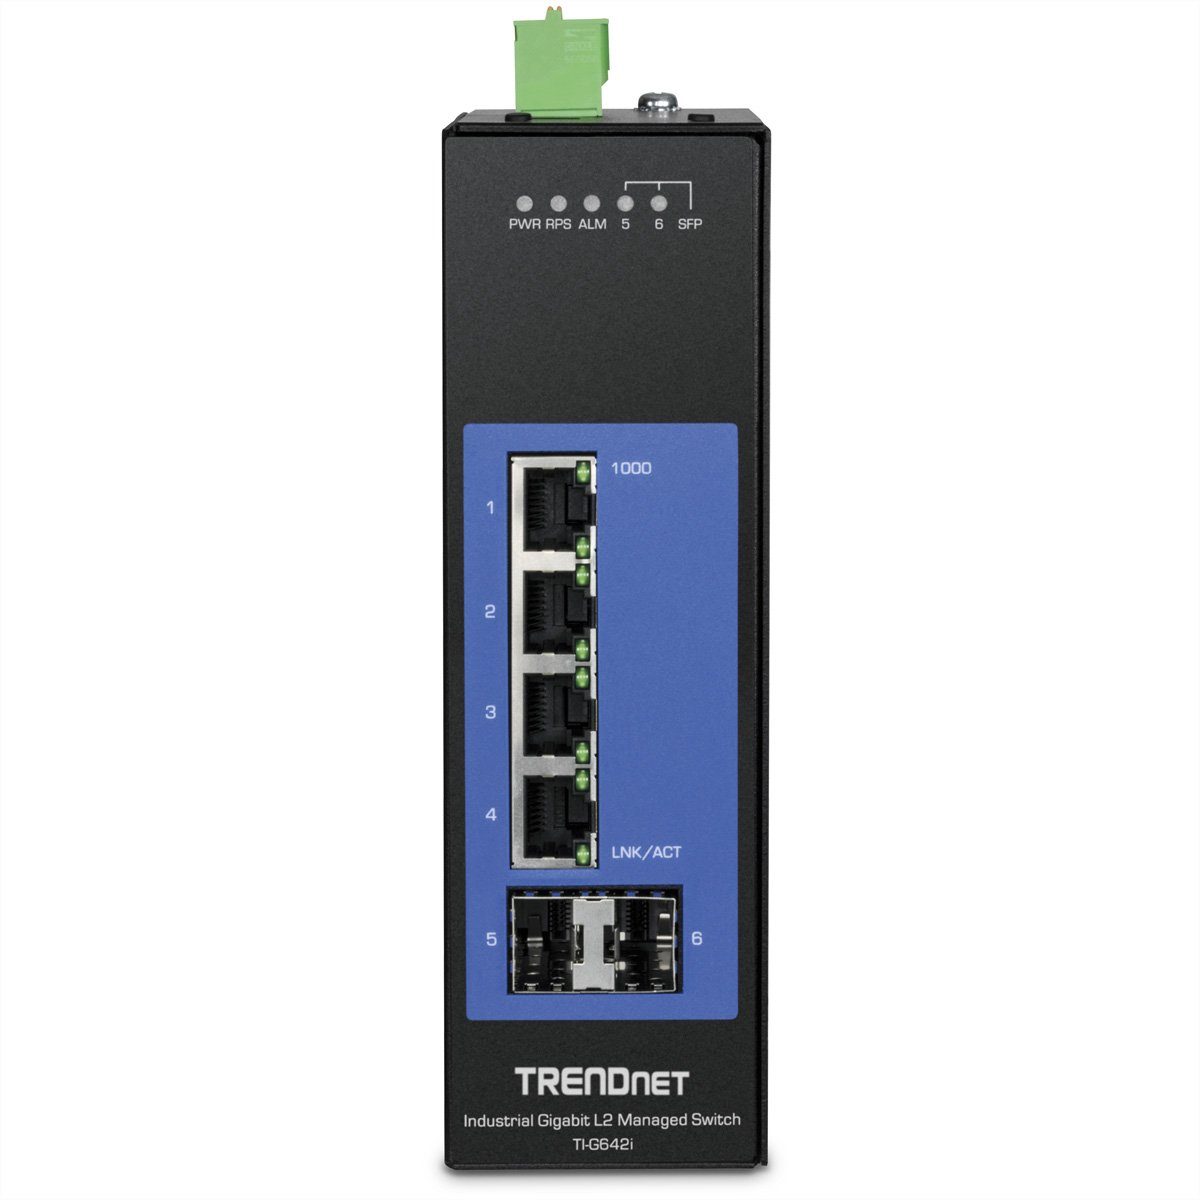 Trendnet TI-G642i DIN-Rail Switch 6-Port Gigabit Industrial L2 Netzwerk-Switch